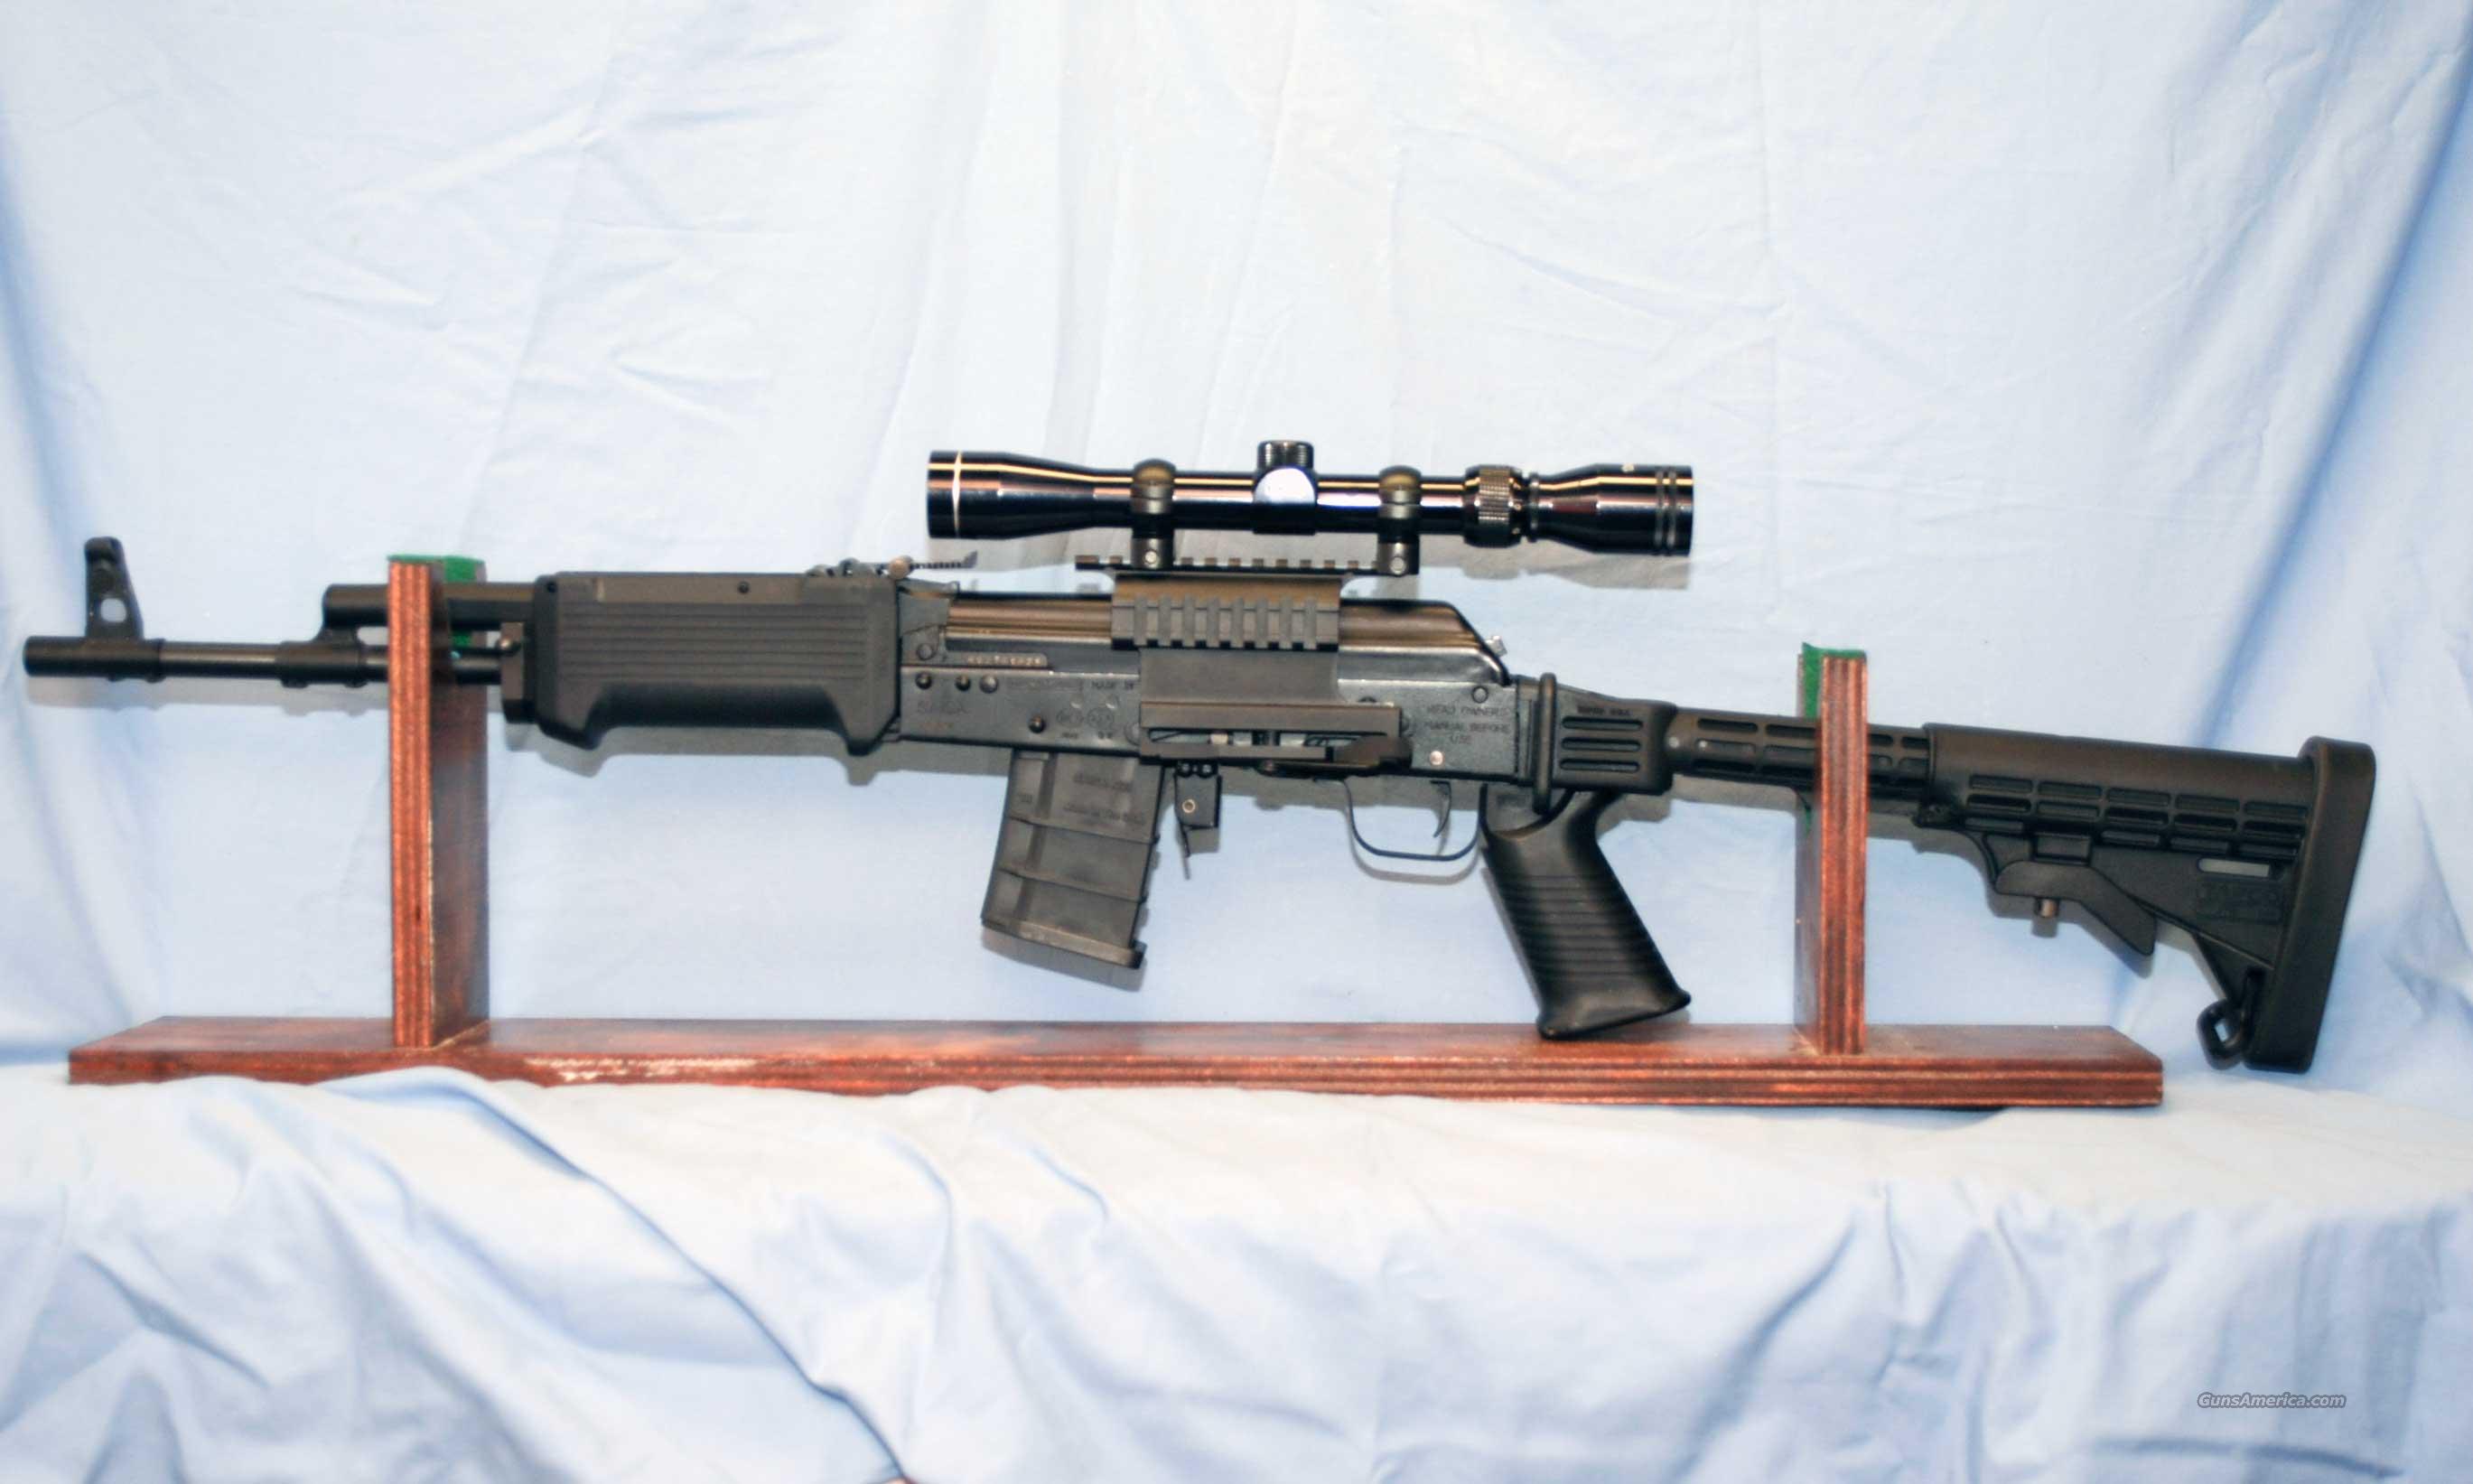 saiga 223 rifles for sale